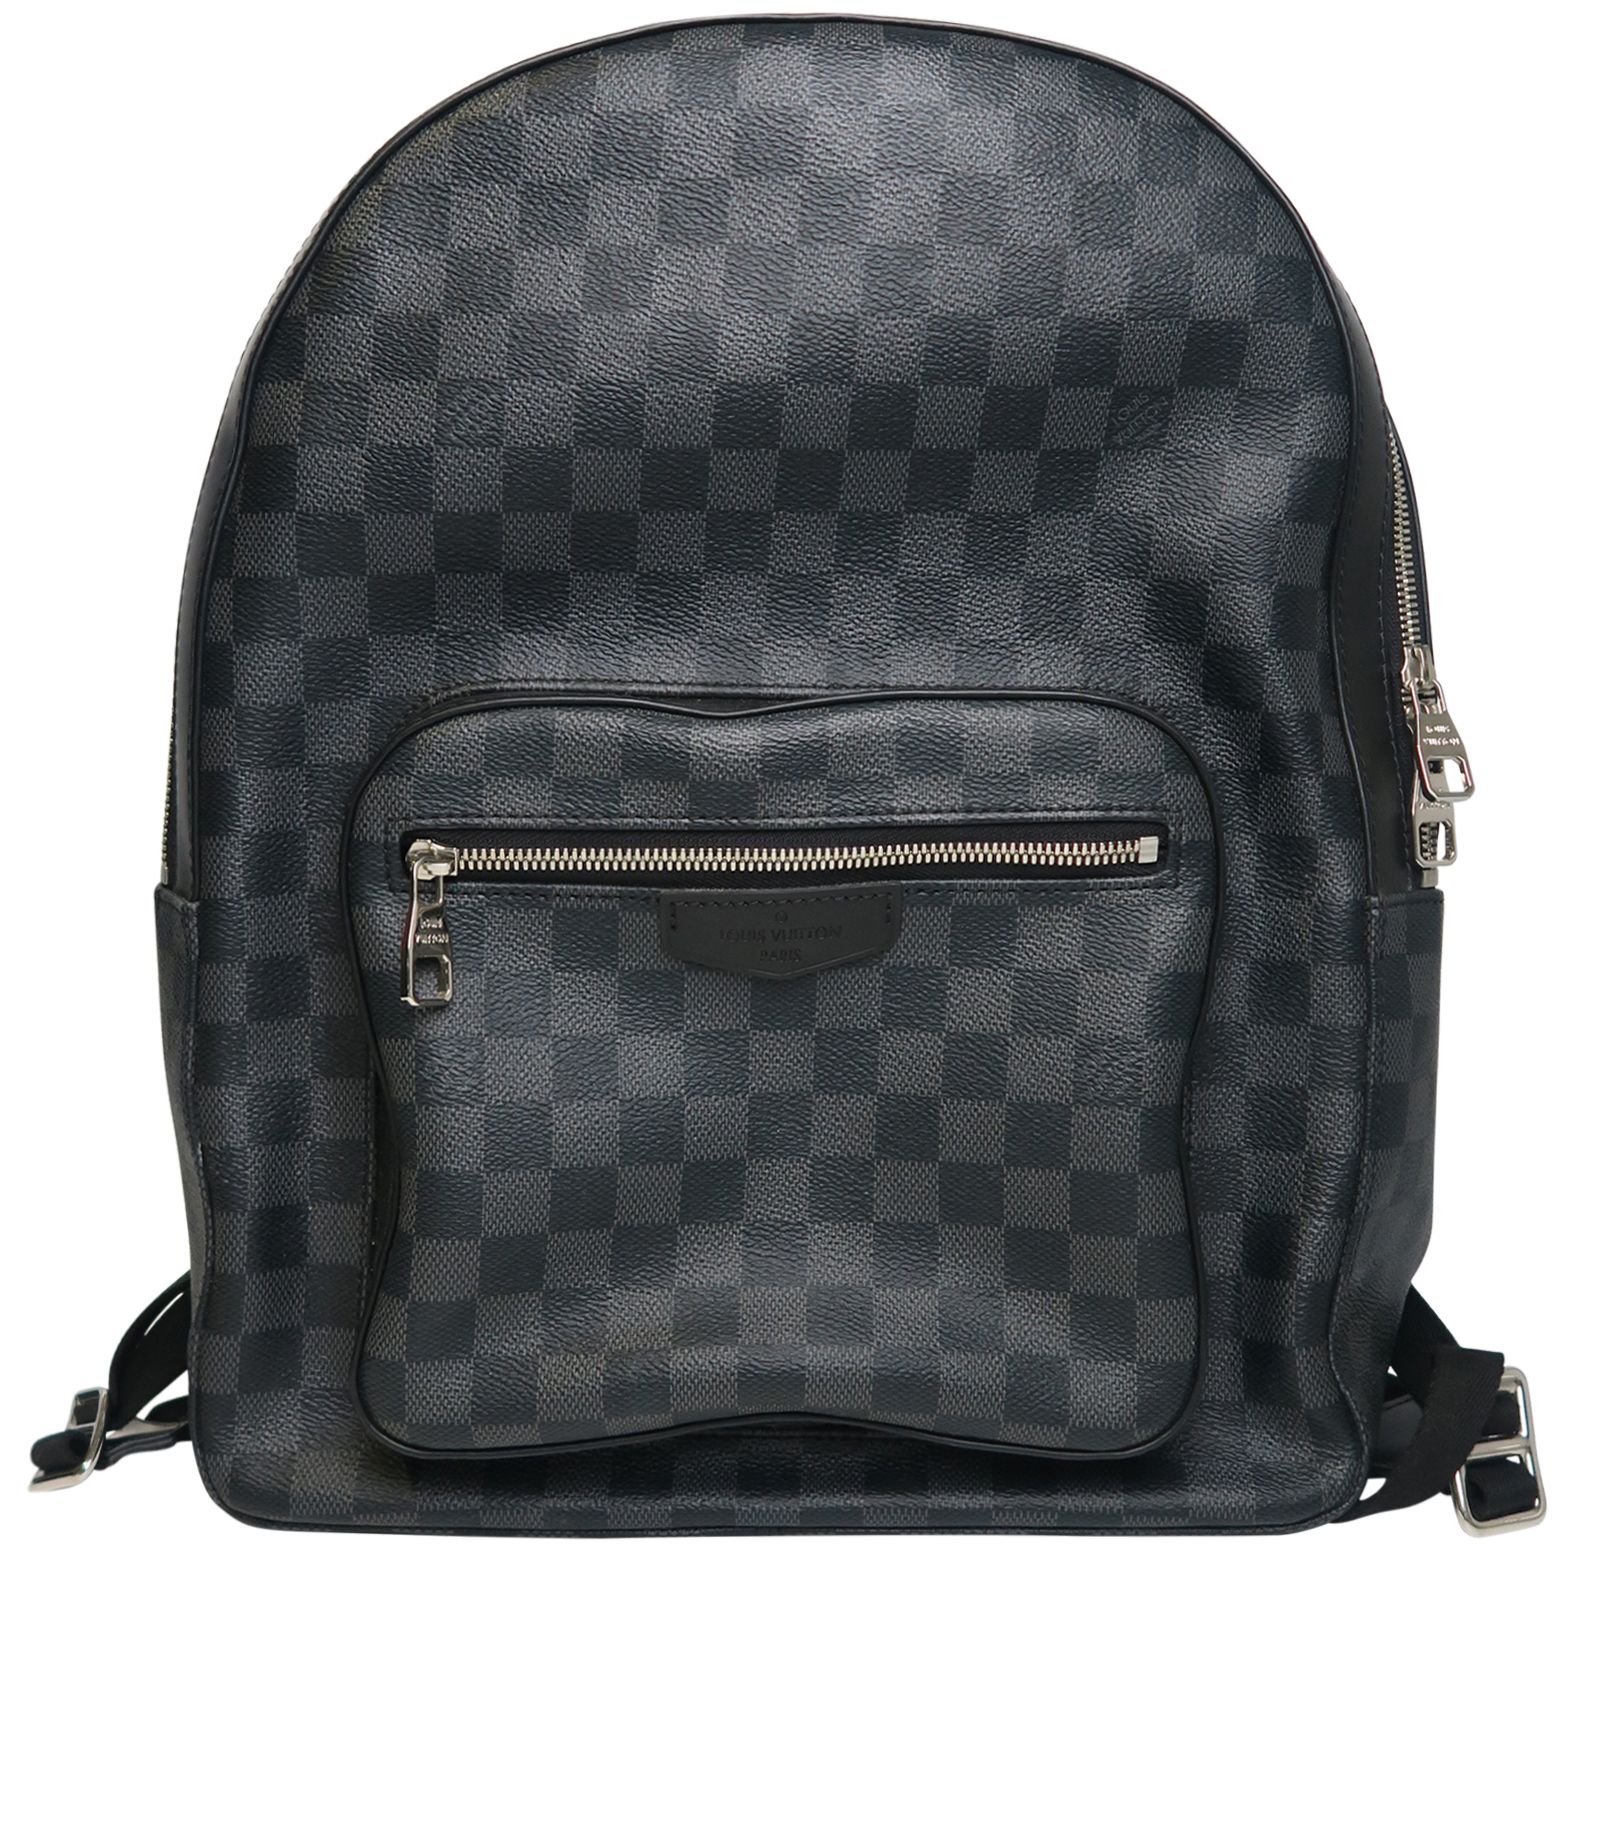 Louis Vuitton Josh Backpack in Damier Graphite. Worn - Depop